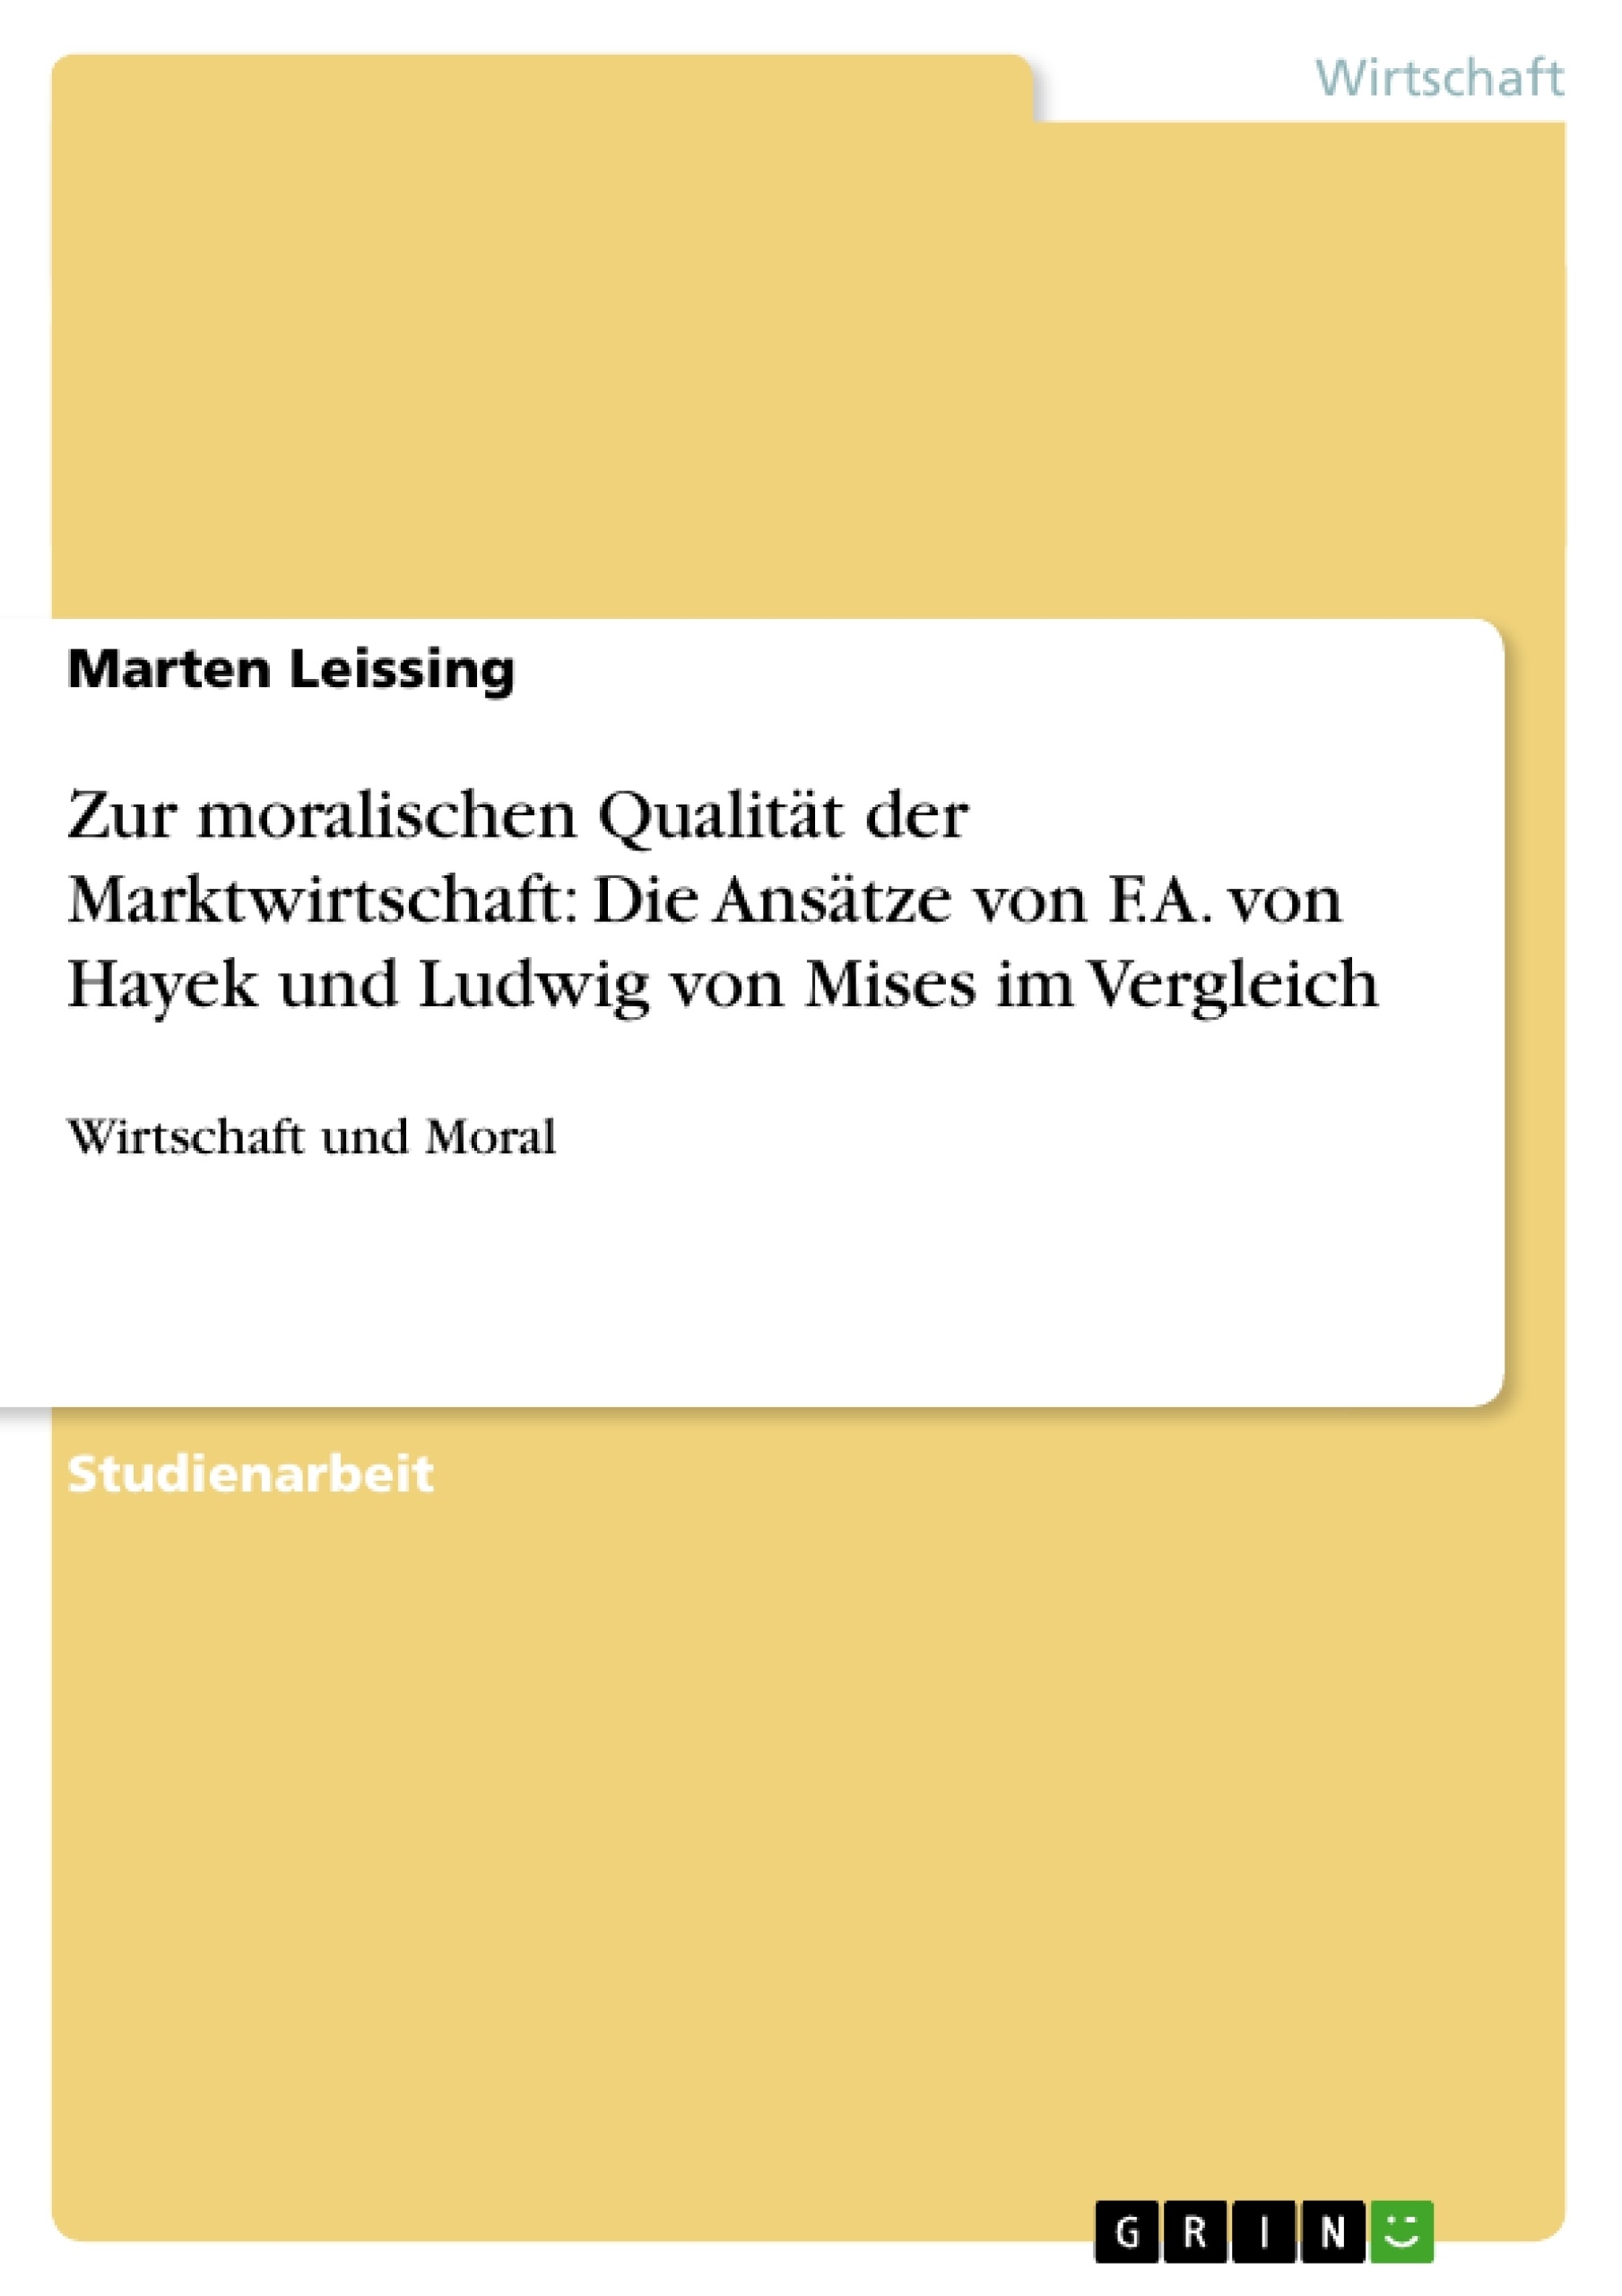 Título: Zur moralischen Qualität der Marktwirtschaft: Die Ansätze von F.A. von Hayek und Ludwig von Mises im Vergleich